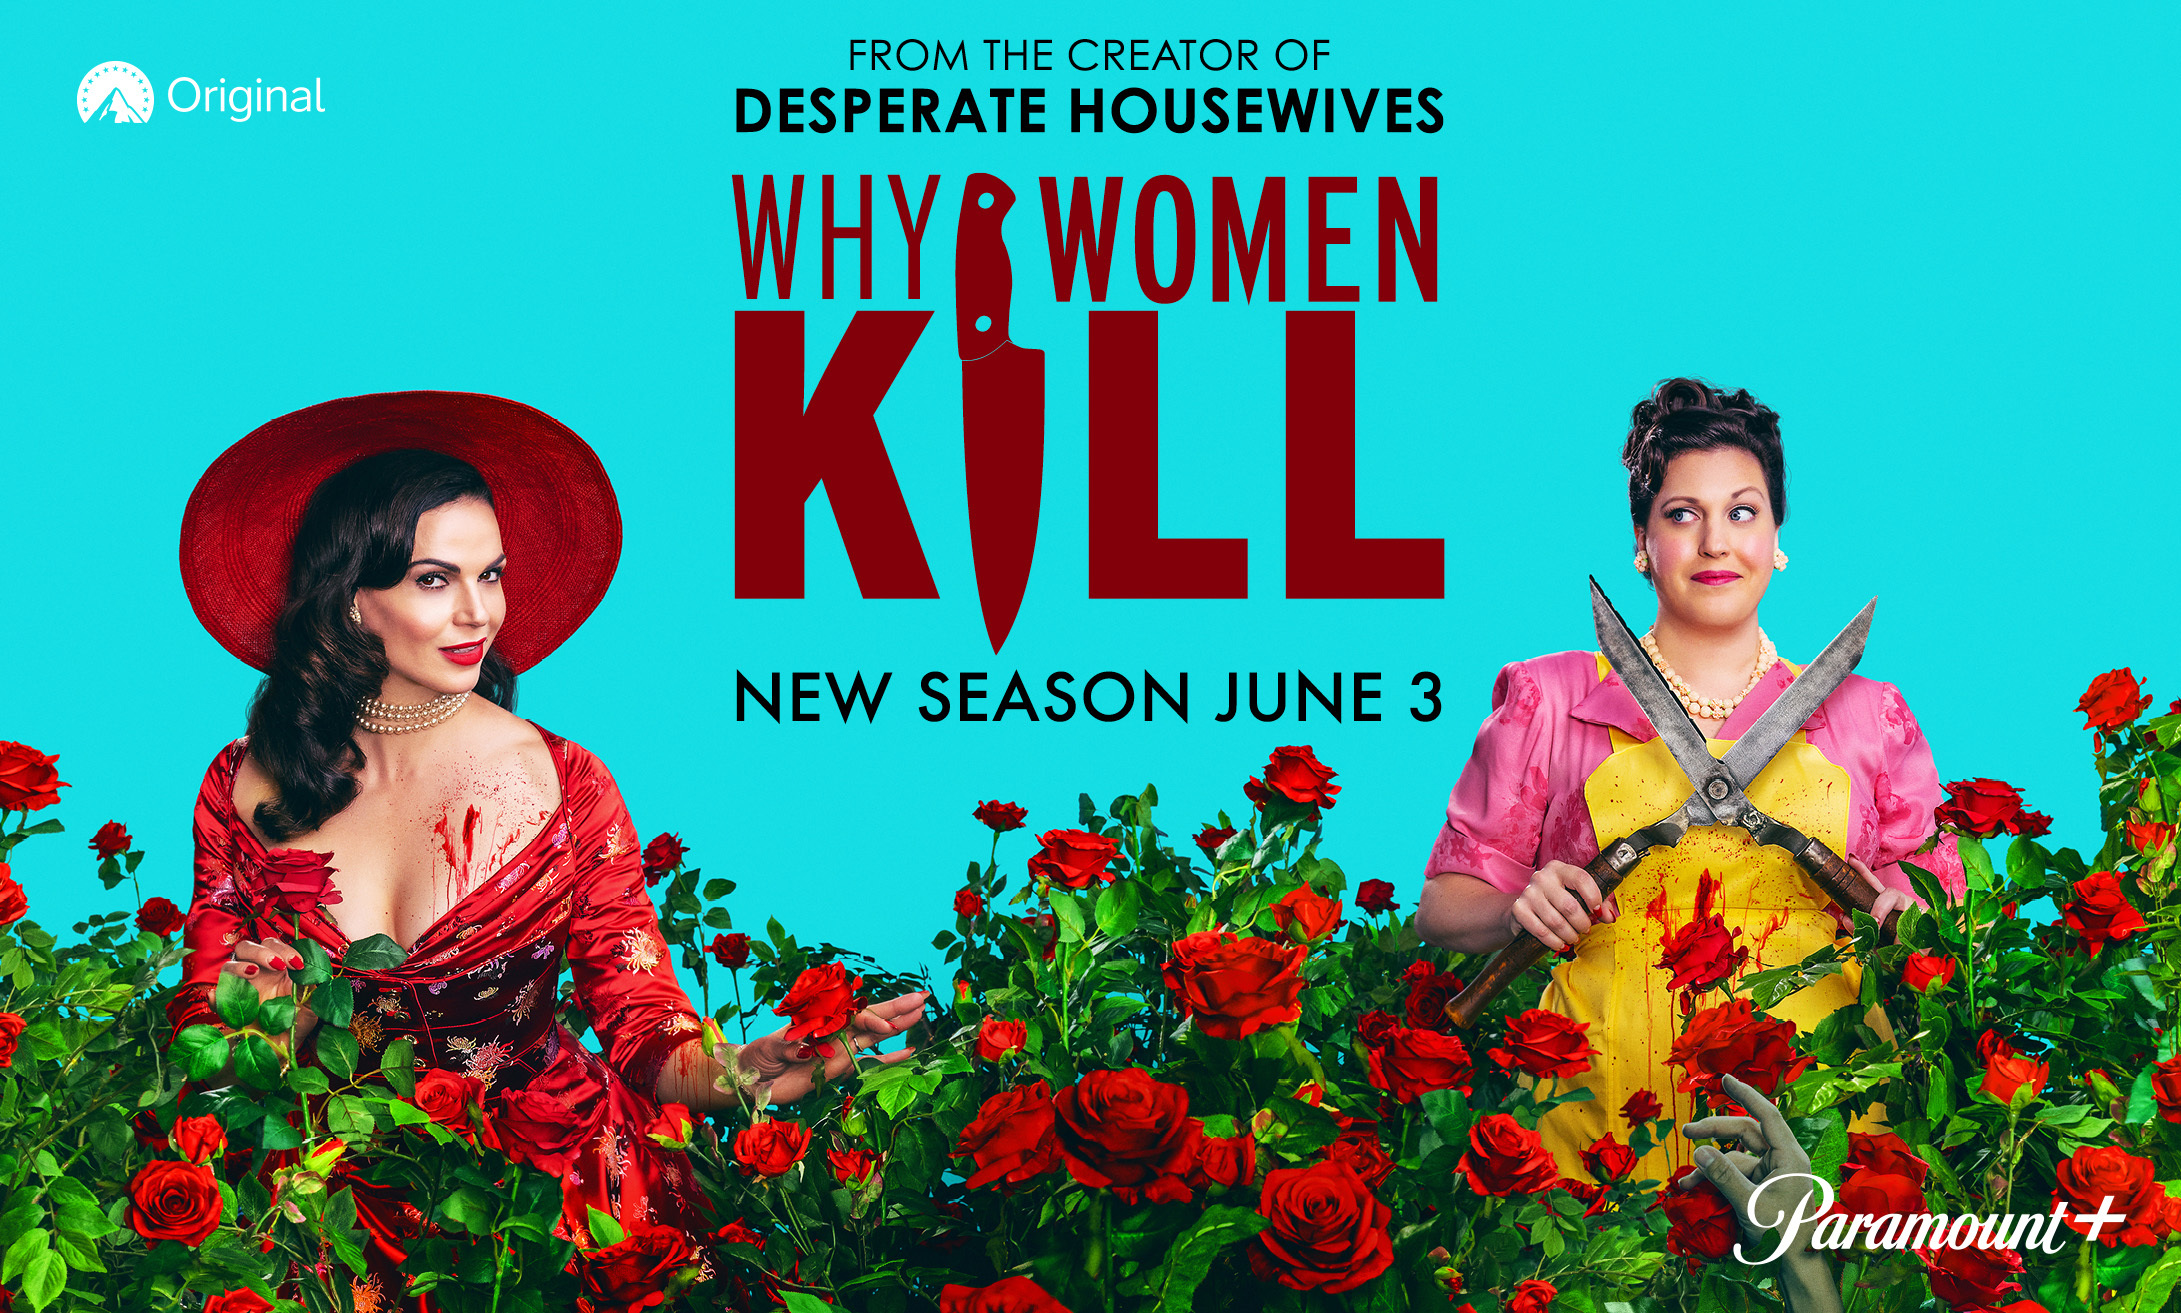 Why Women Kill Season 2 on Paramount+